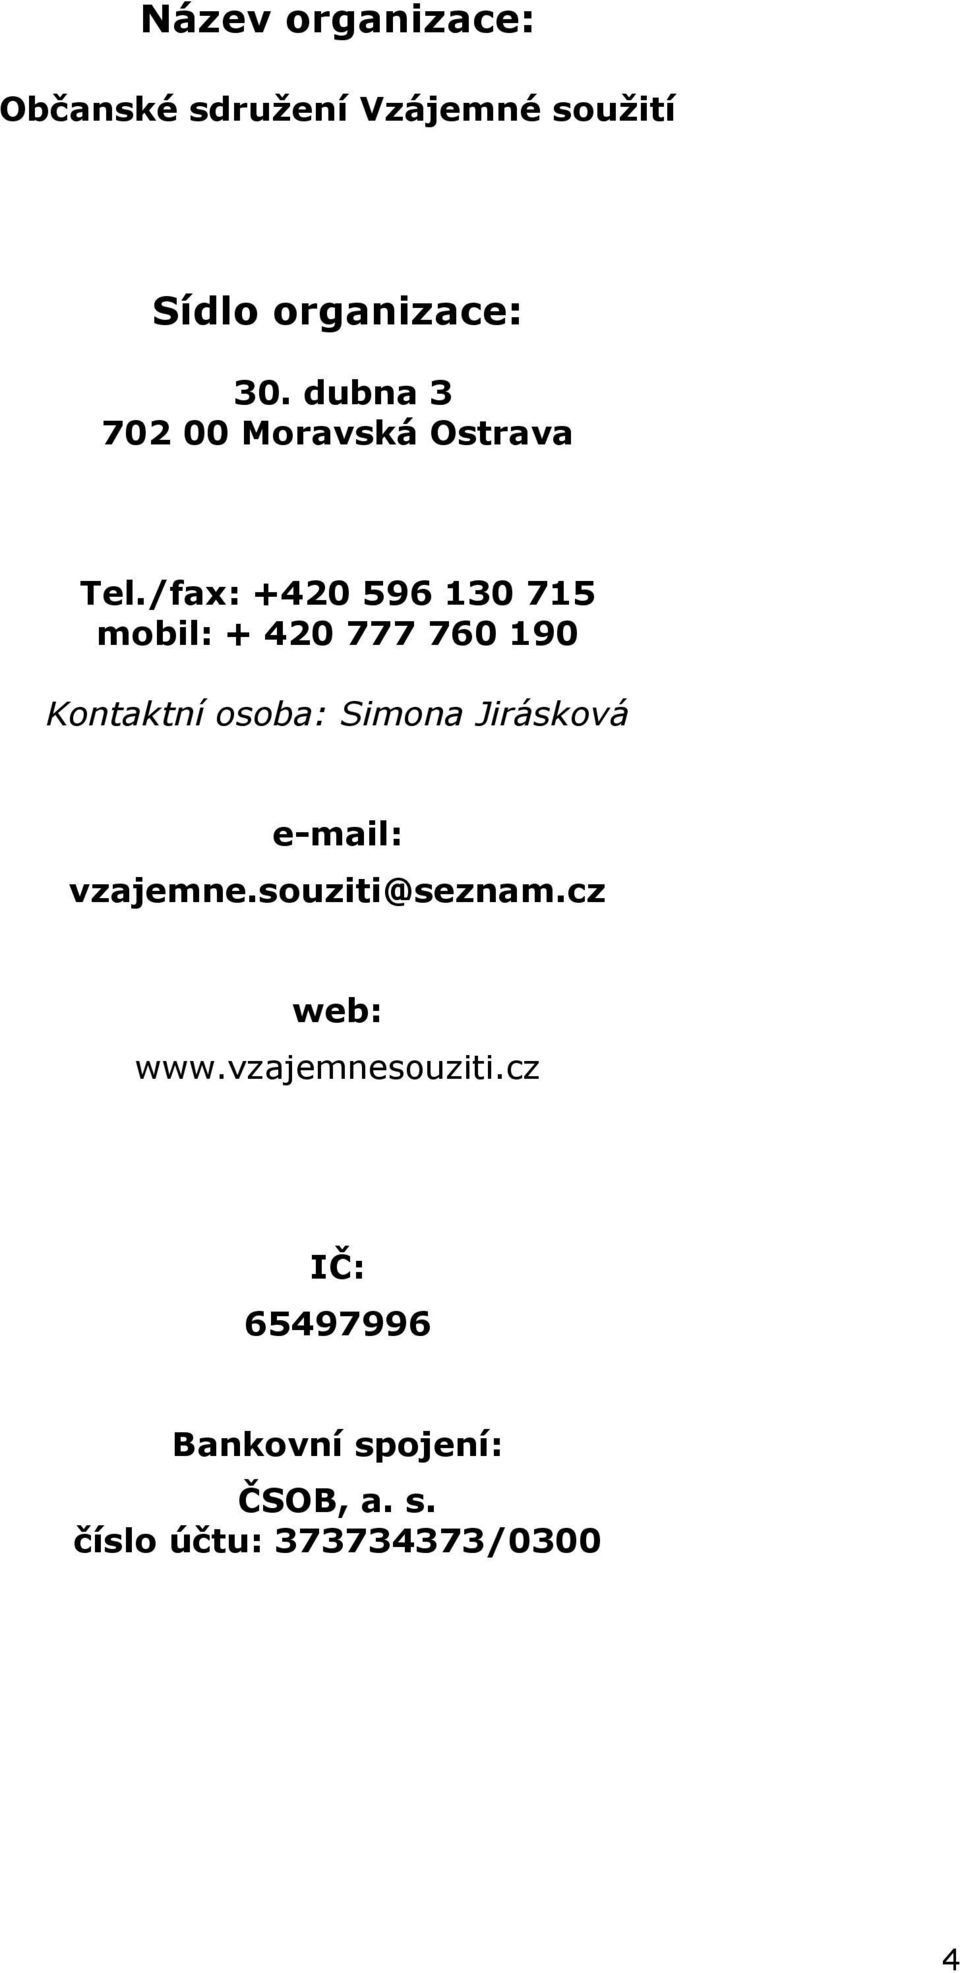 /fax: +420 596 130 715 mobil: + 420 777 760 190 Kontaktní osoba: Simona Jirásková